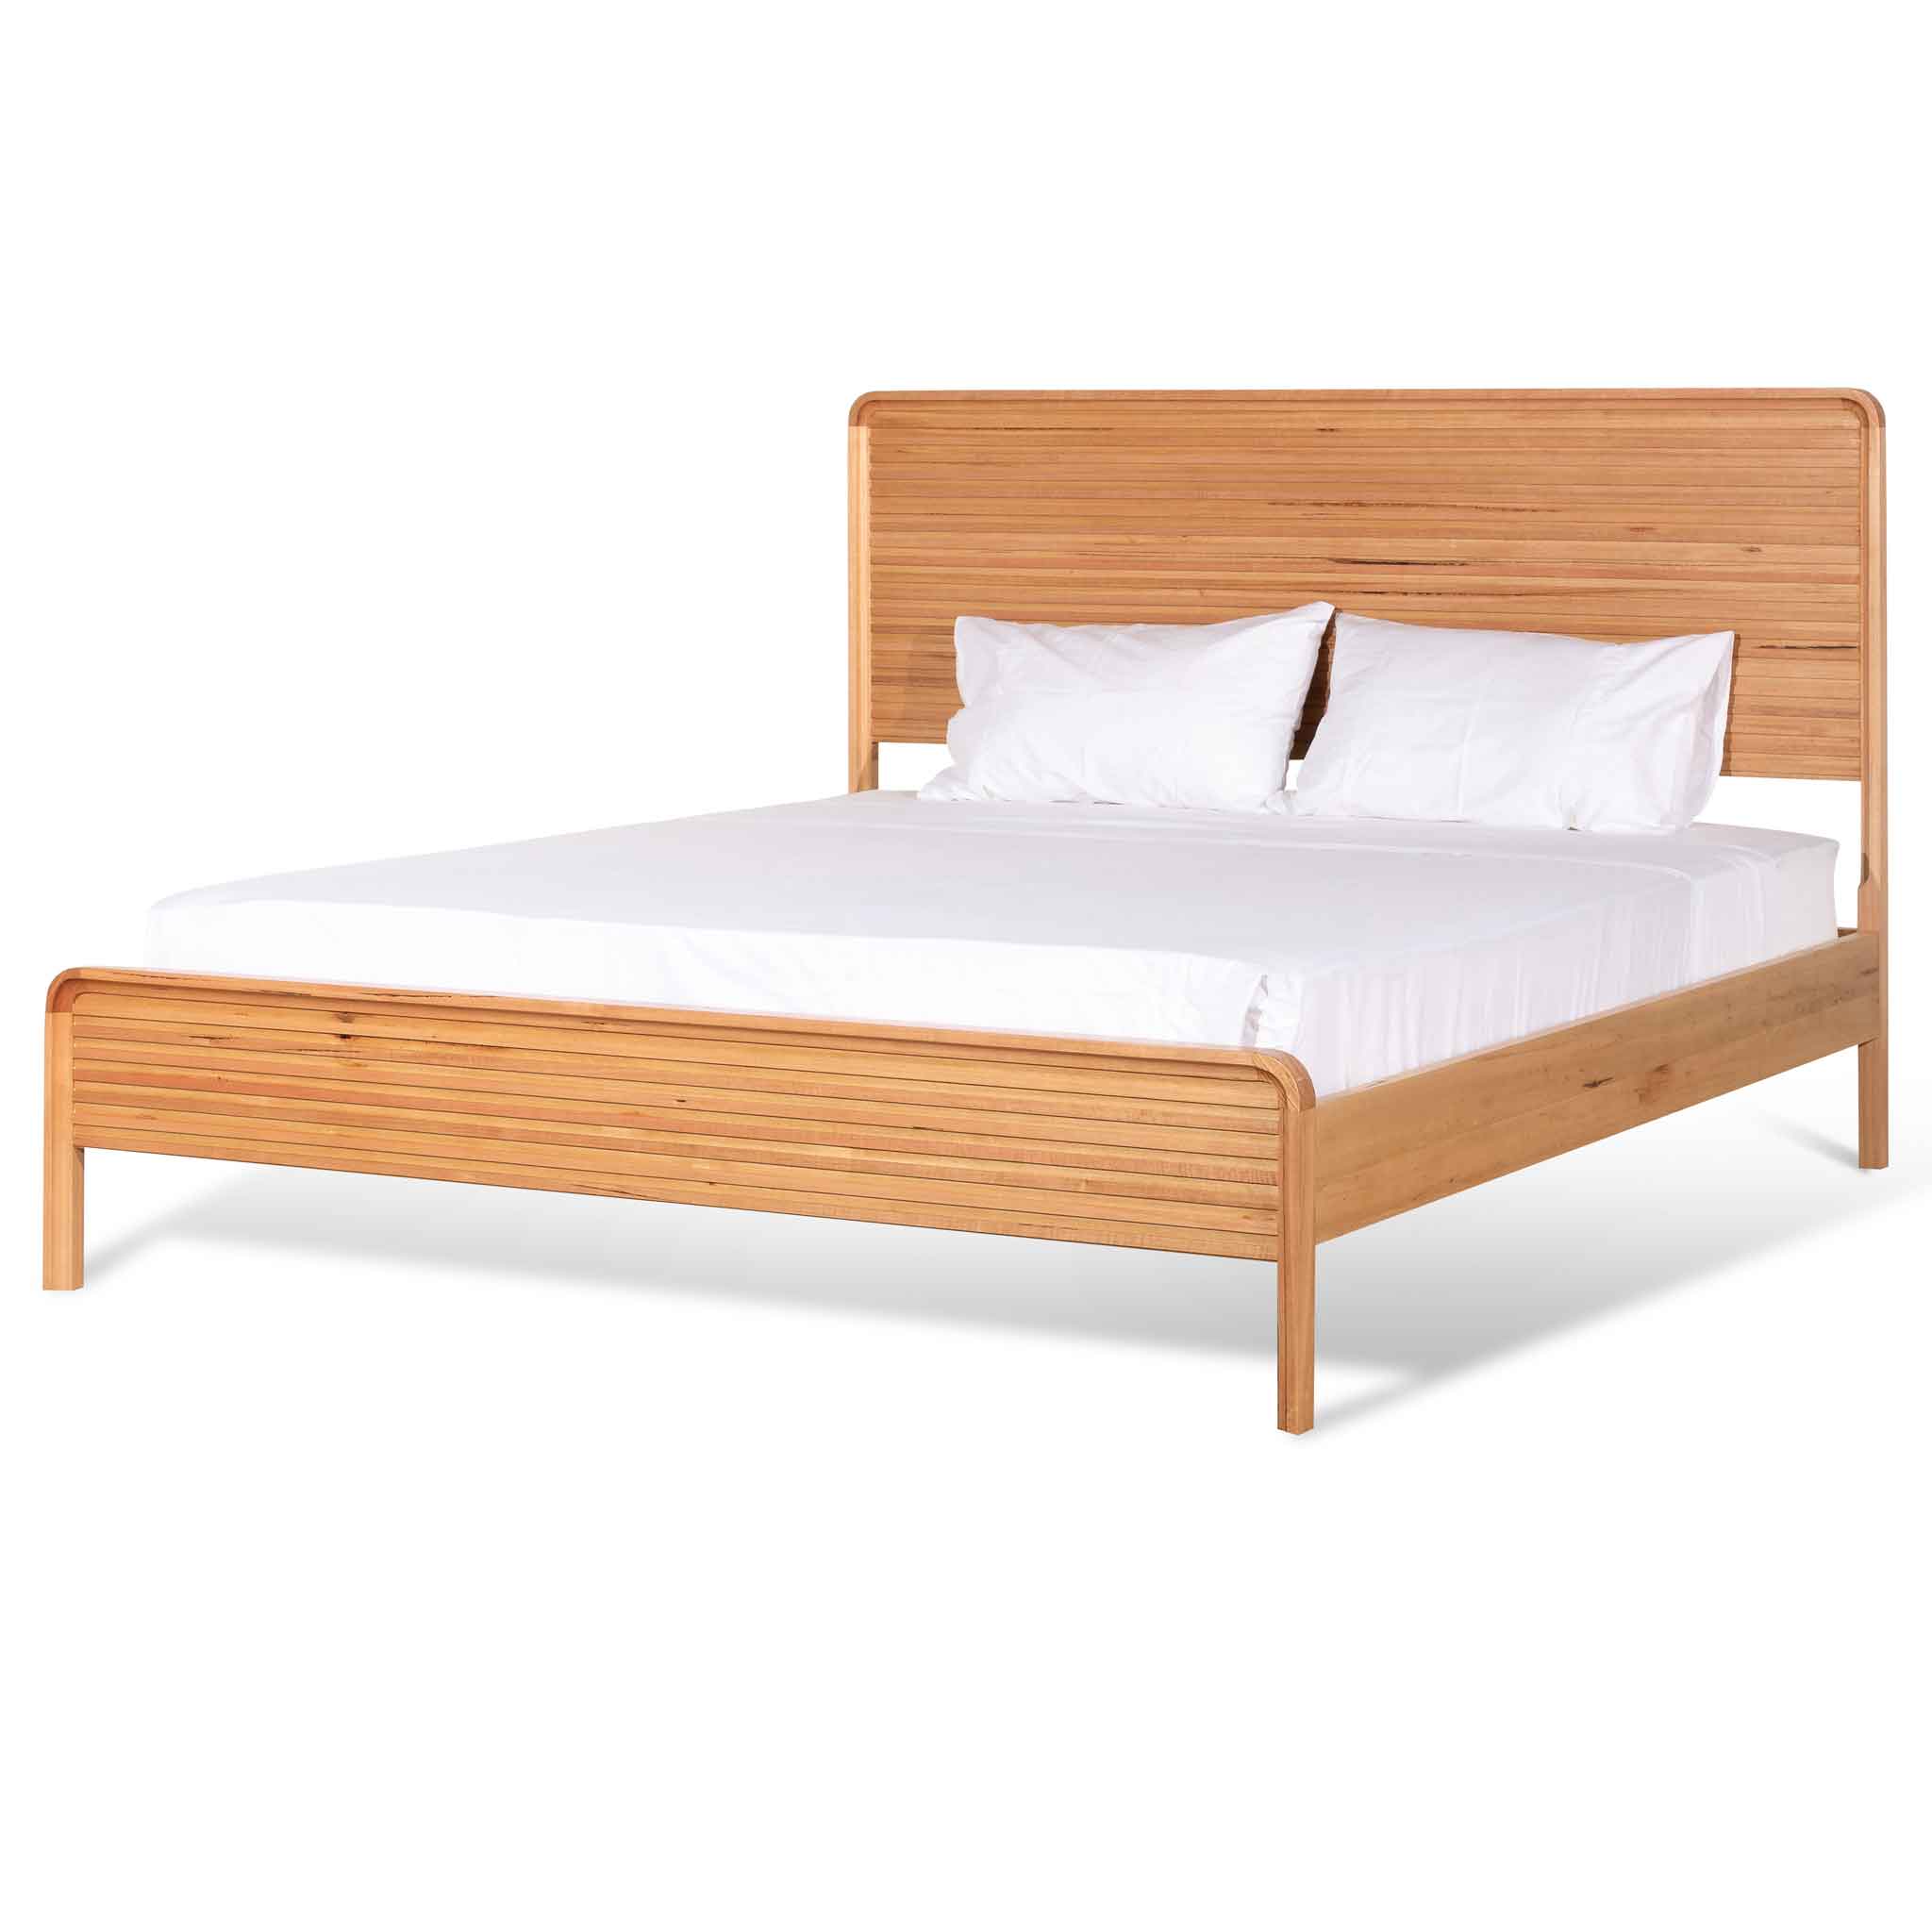 Ellen King Sized Bed Frame - Messmate